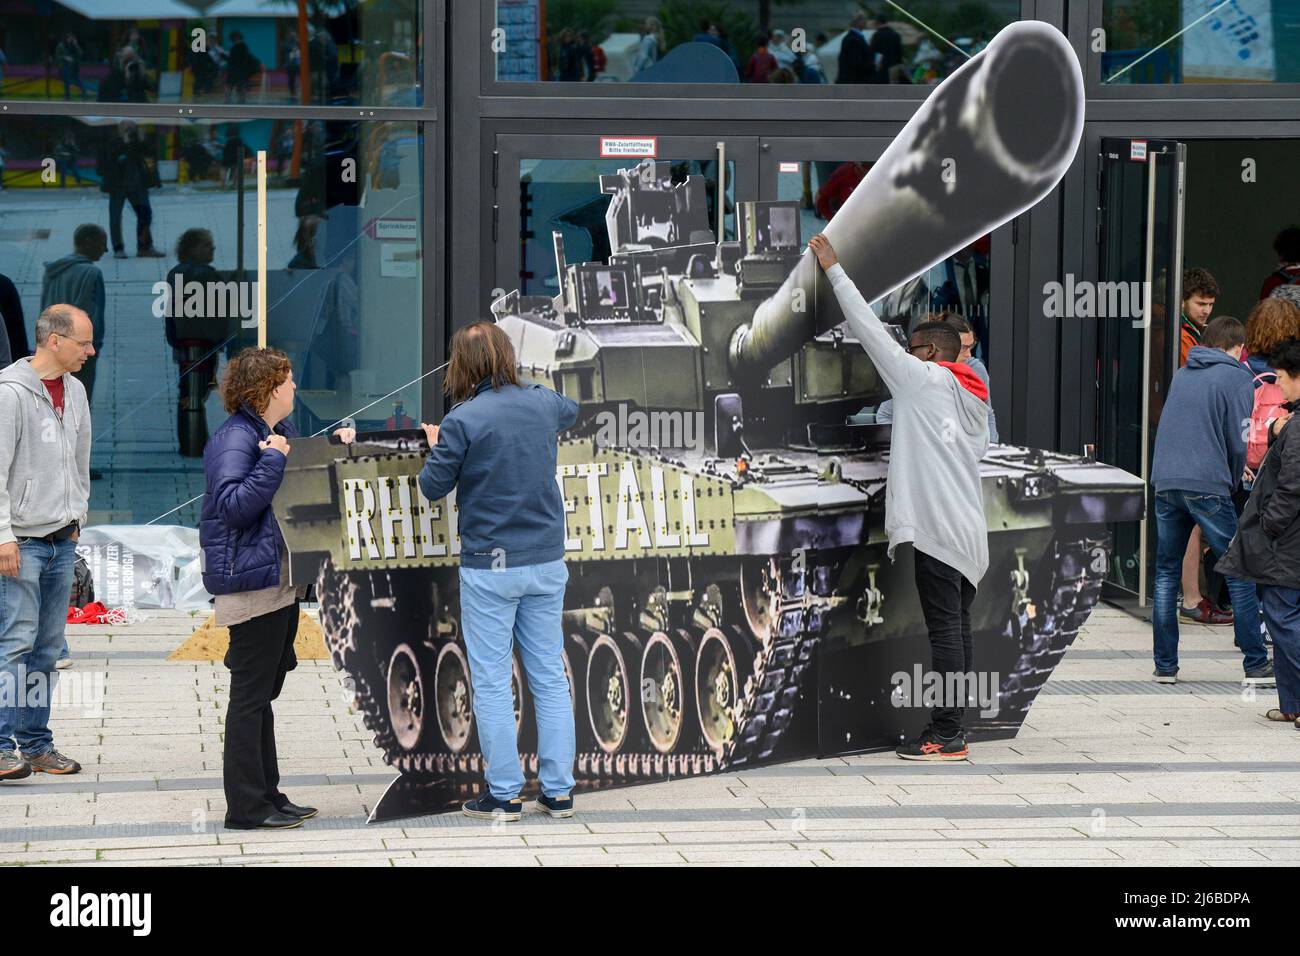 Allemagne, Berlin, protestation de l'ONG Campact contre le commerce d'armes, ballon modèle de la société allemande de denfense Rheinmetall Leopard 2 bataille tank Banque D'Images